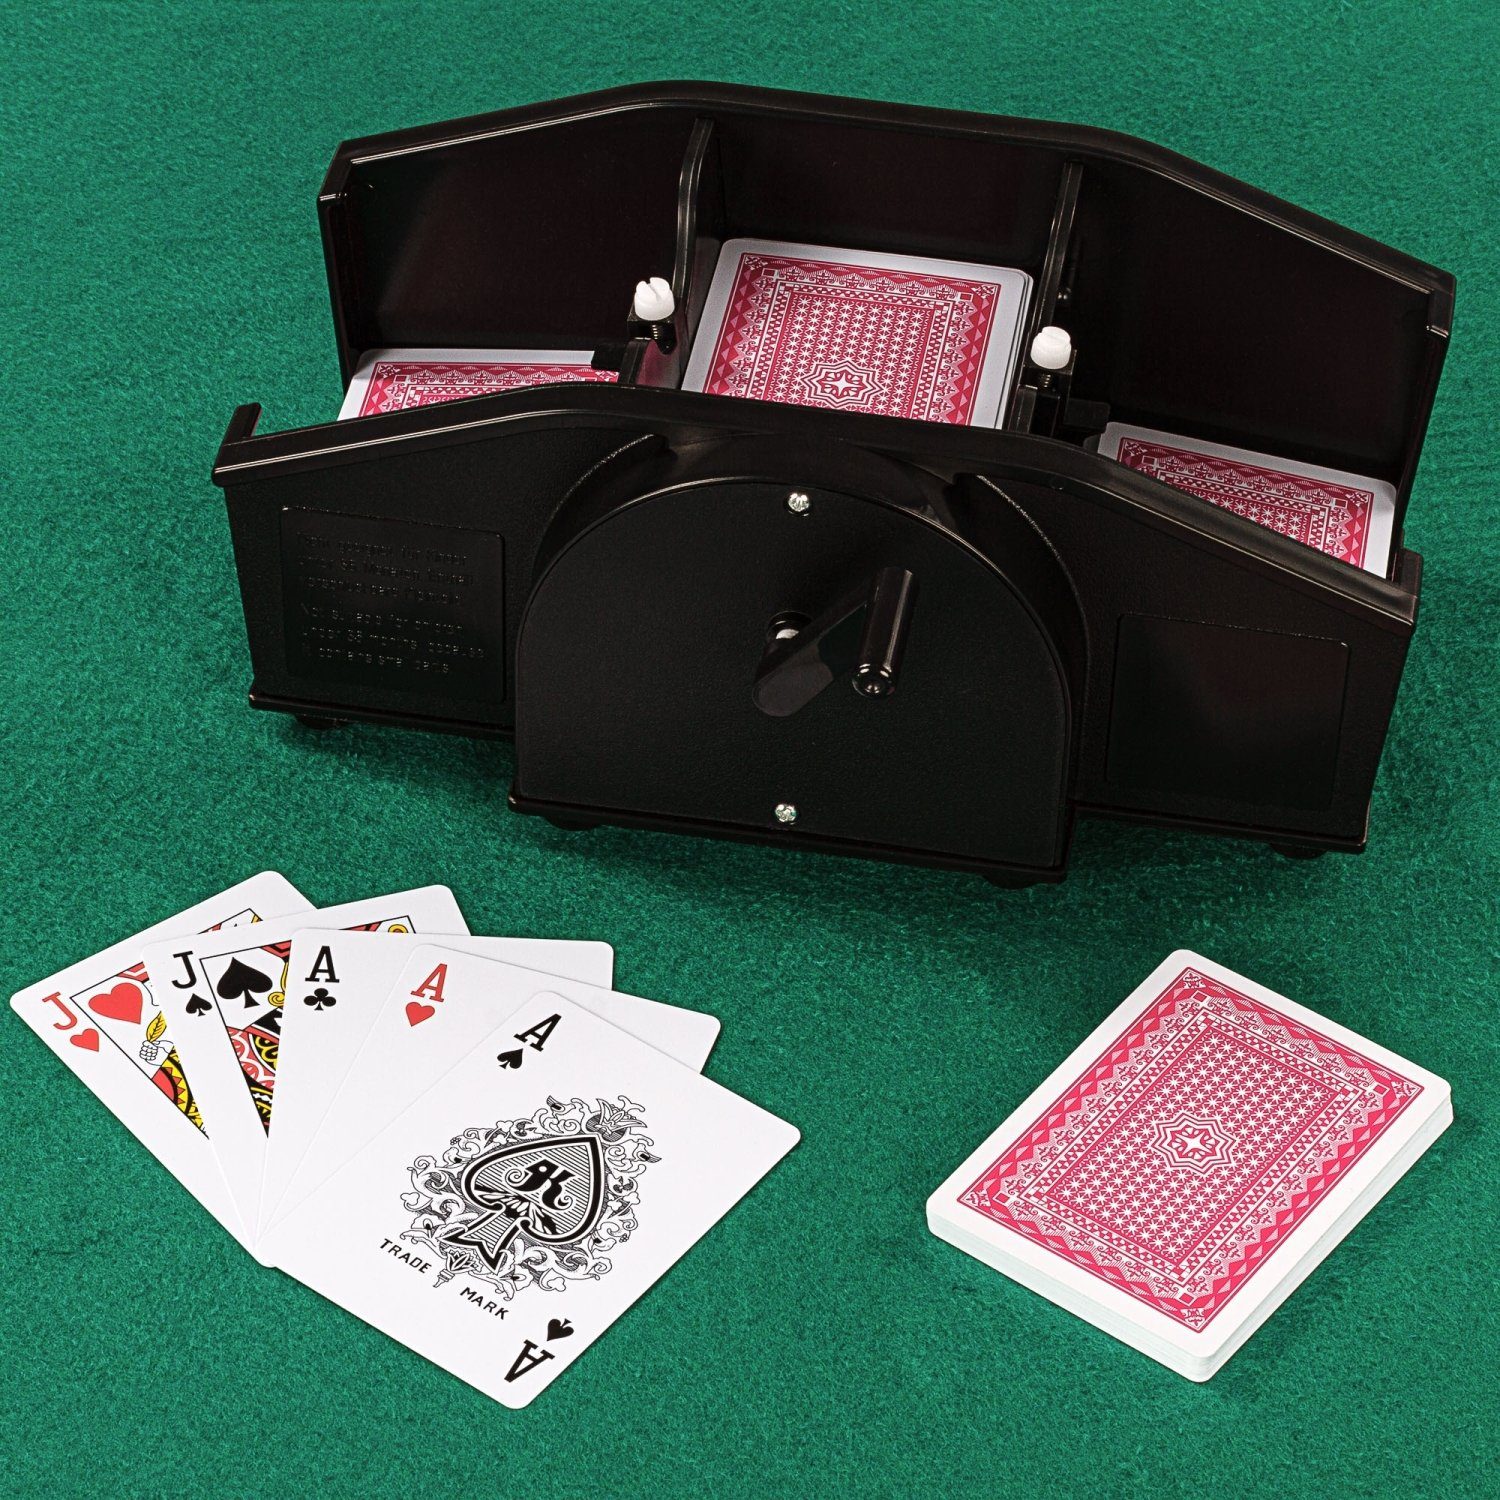 Keine im Karten mm PLANET Format mit GAMES notwendig, für Batterien Kartenmischmaschine Kartenmischer, Handkurbel, 80-91 x Spiel, 55-65